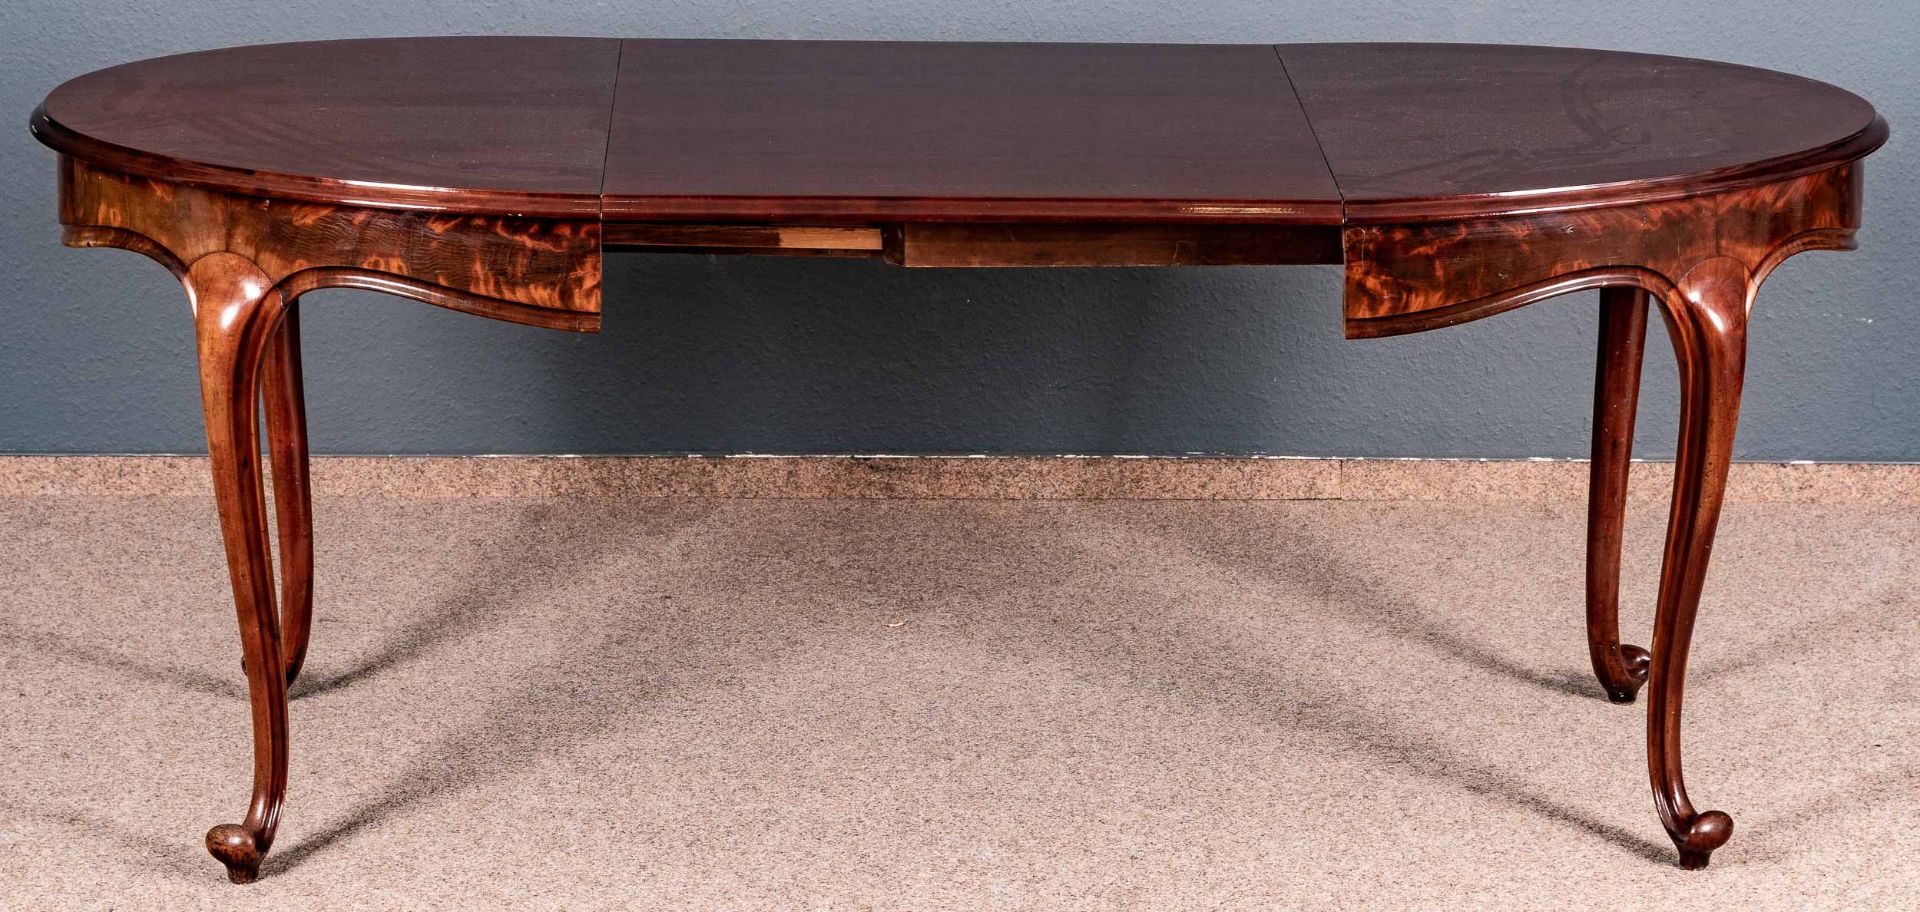 Ovaler Esstisch, Mahagoni massiv, furniert & lackiert. Mittig ausziehbar mit einer dafür angefertig - Image 5 of 9